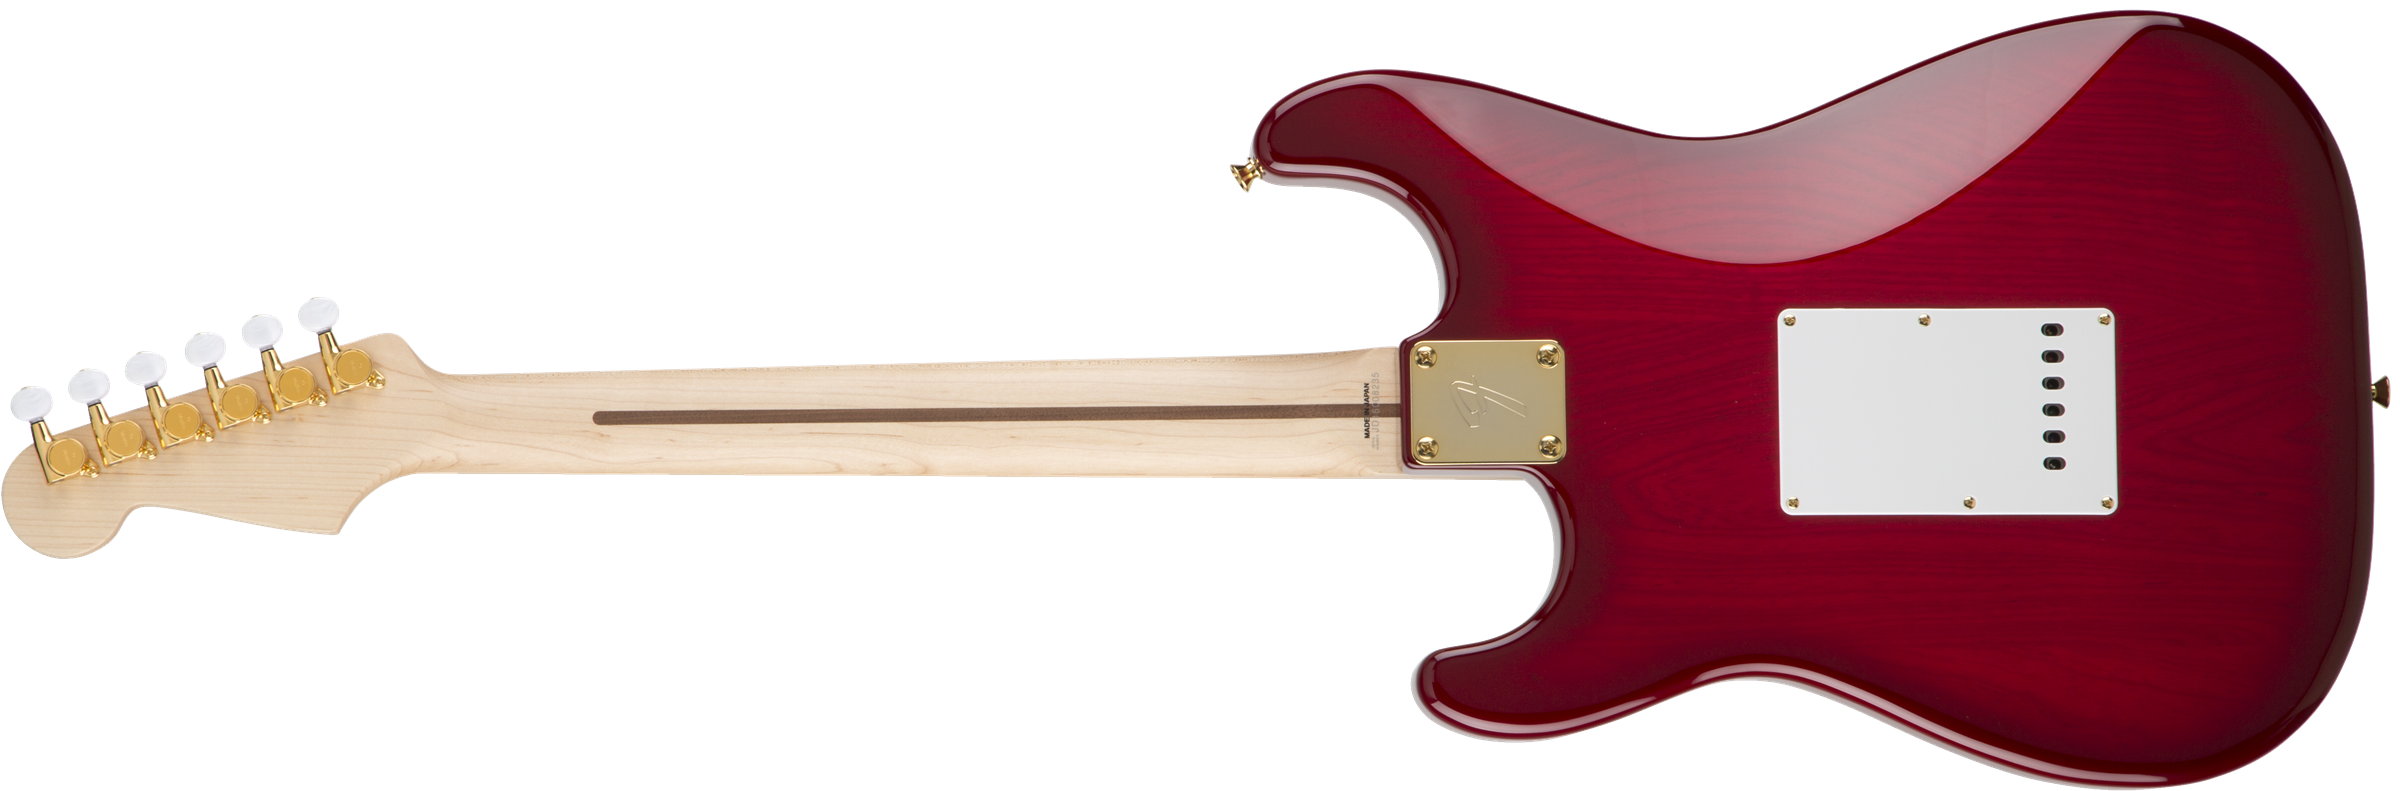 Fender Richie Kotzen Strat MN Transparent Red Burst